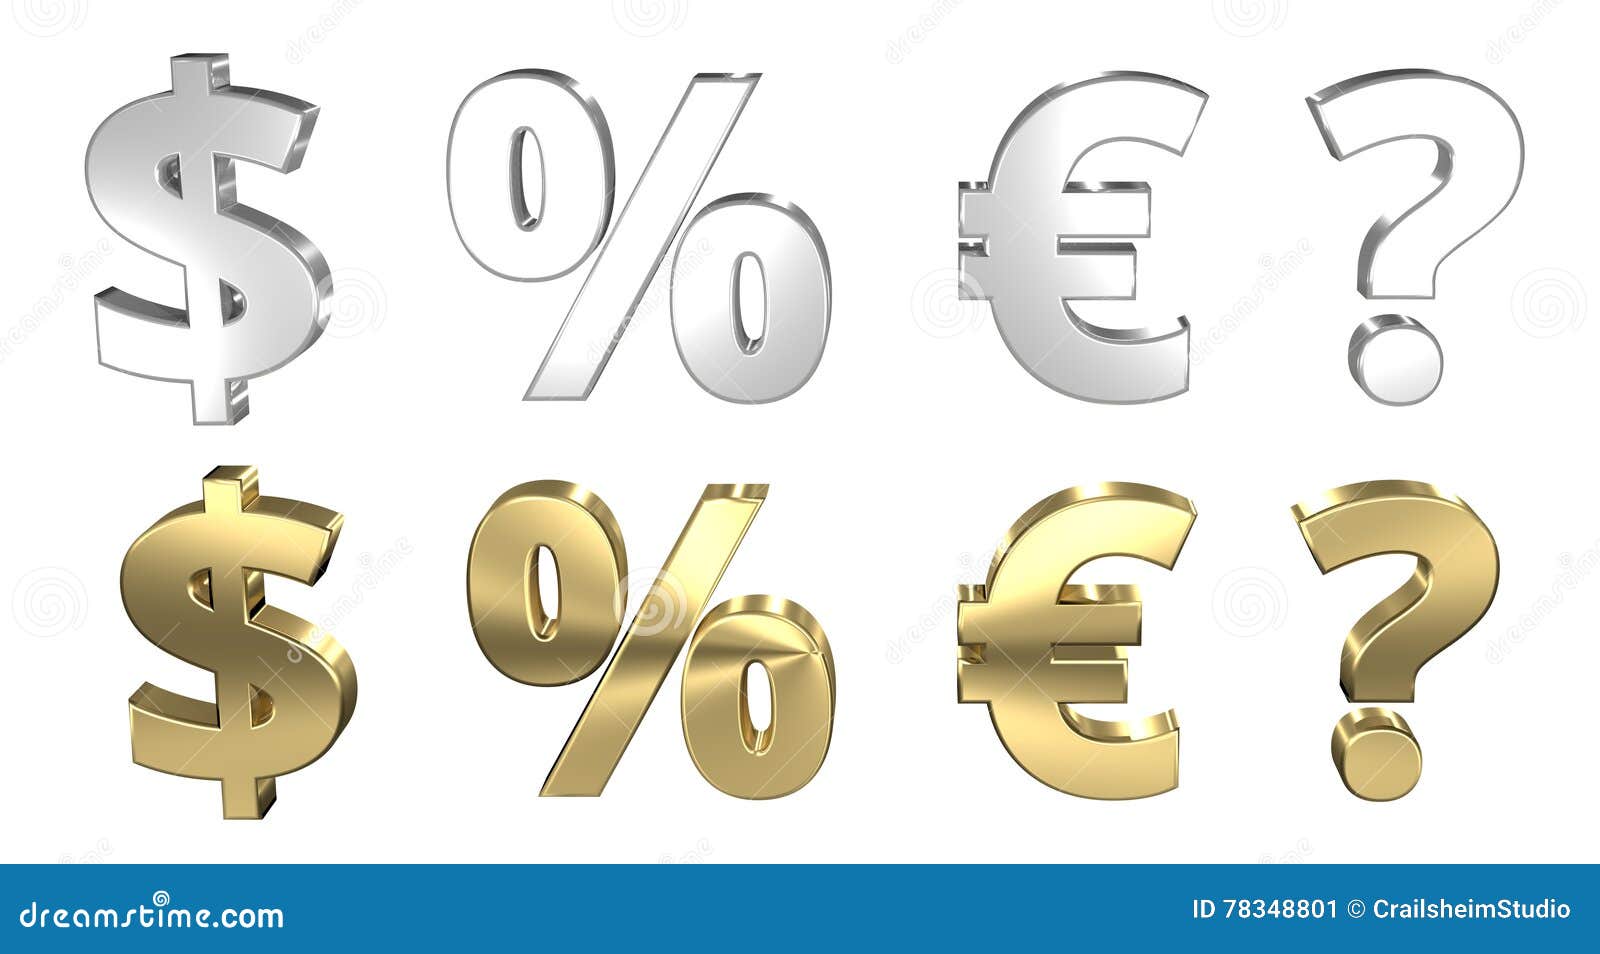 Проценты и валюты картинки.